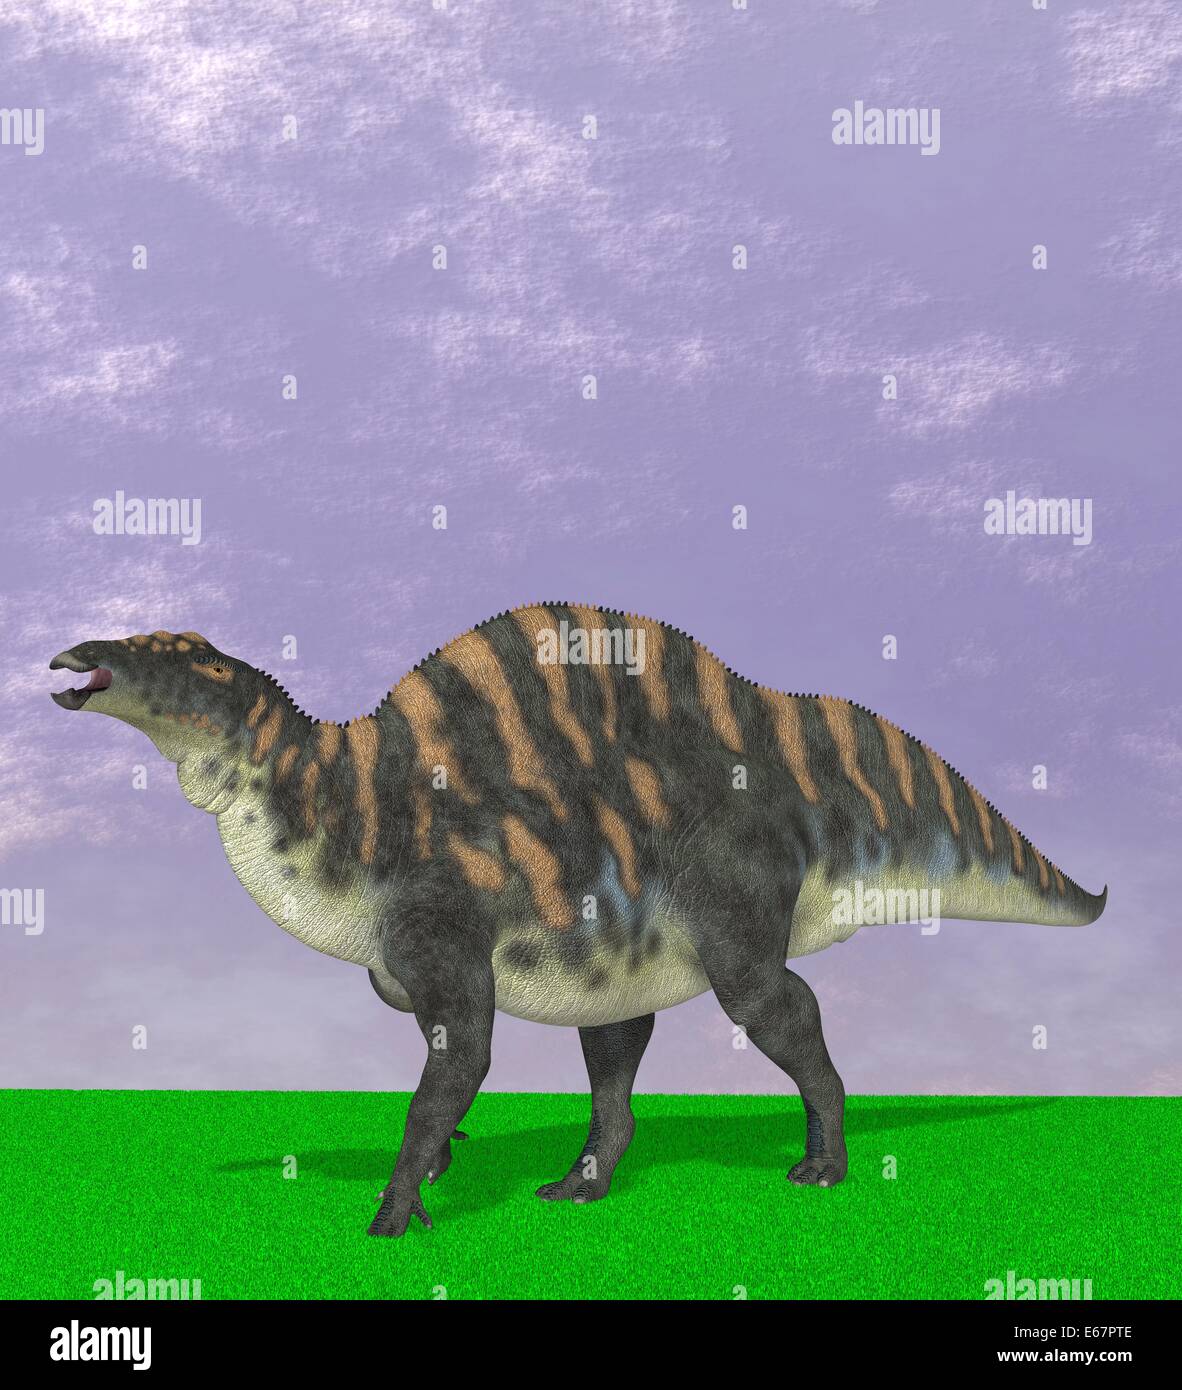 Dinosaurier Ouranosaurus / dinosaur Ouranosaurus Stock Photo